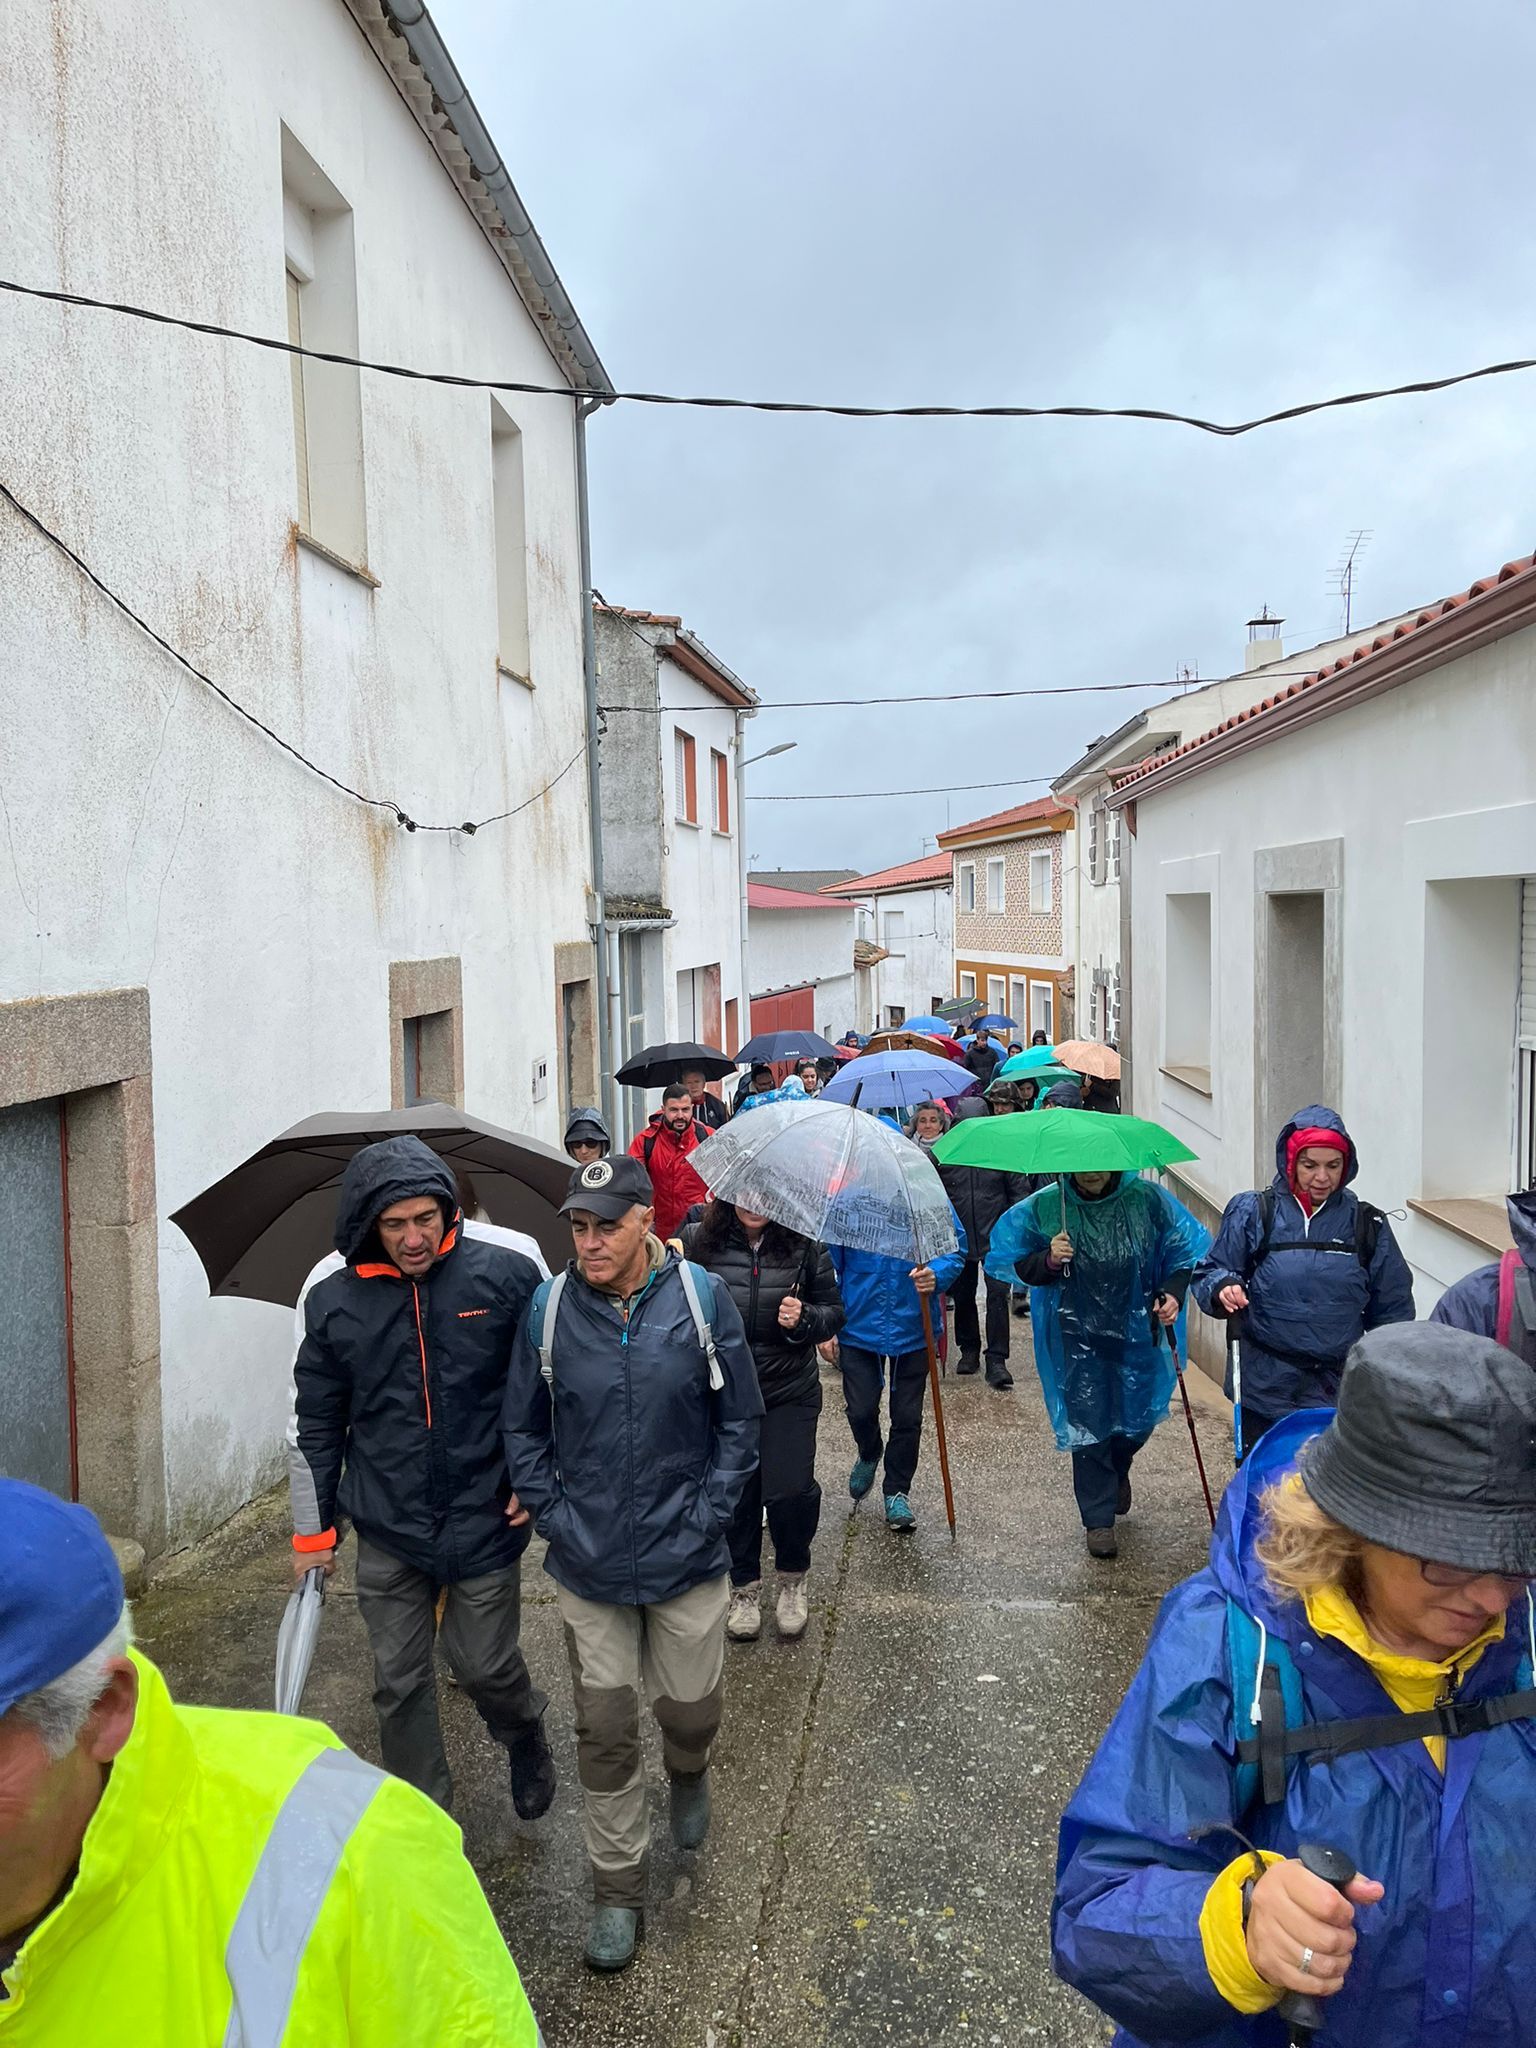 GALERÍA | Marcha de senderismo "Arribes del Huebra" en Barruecopardo